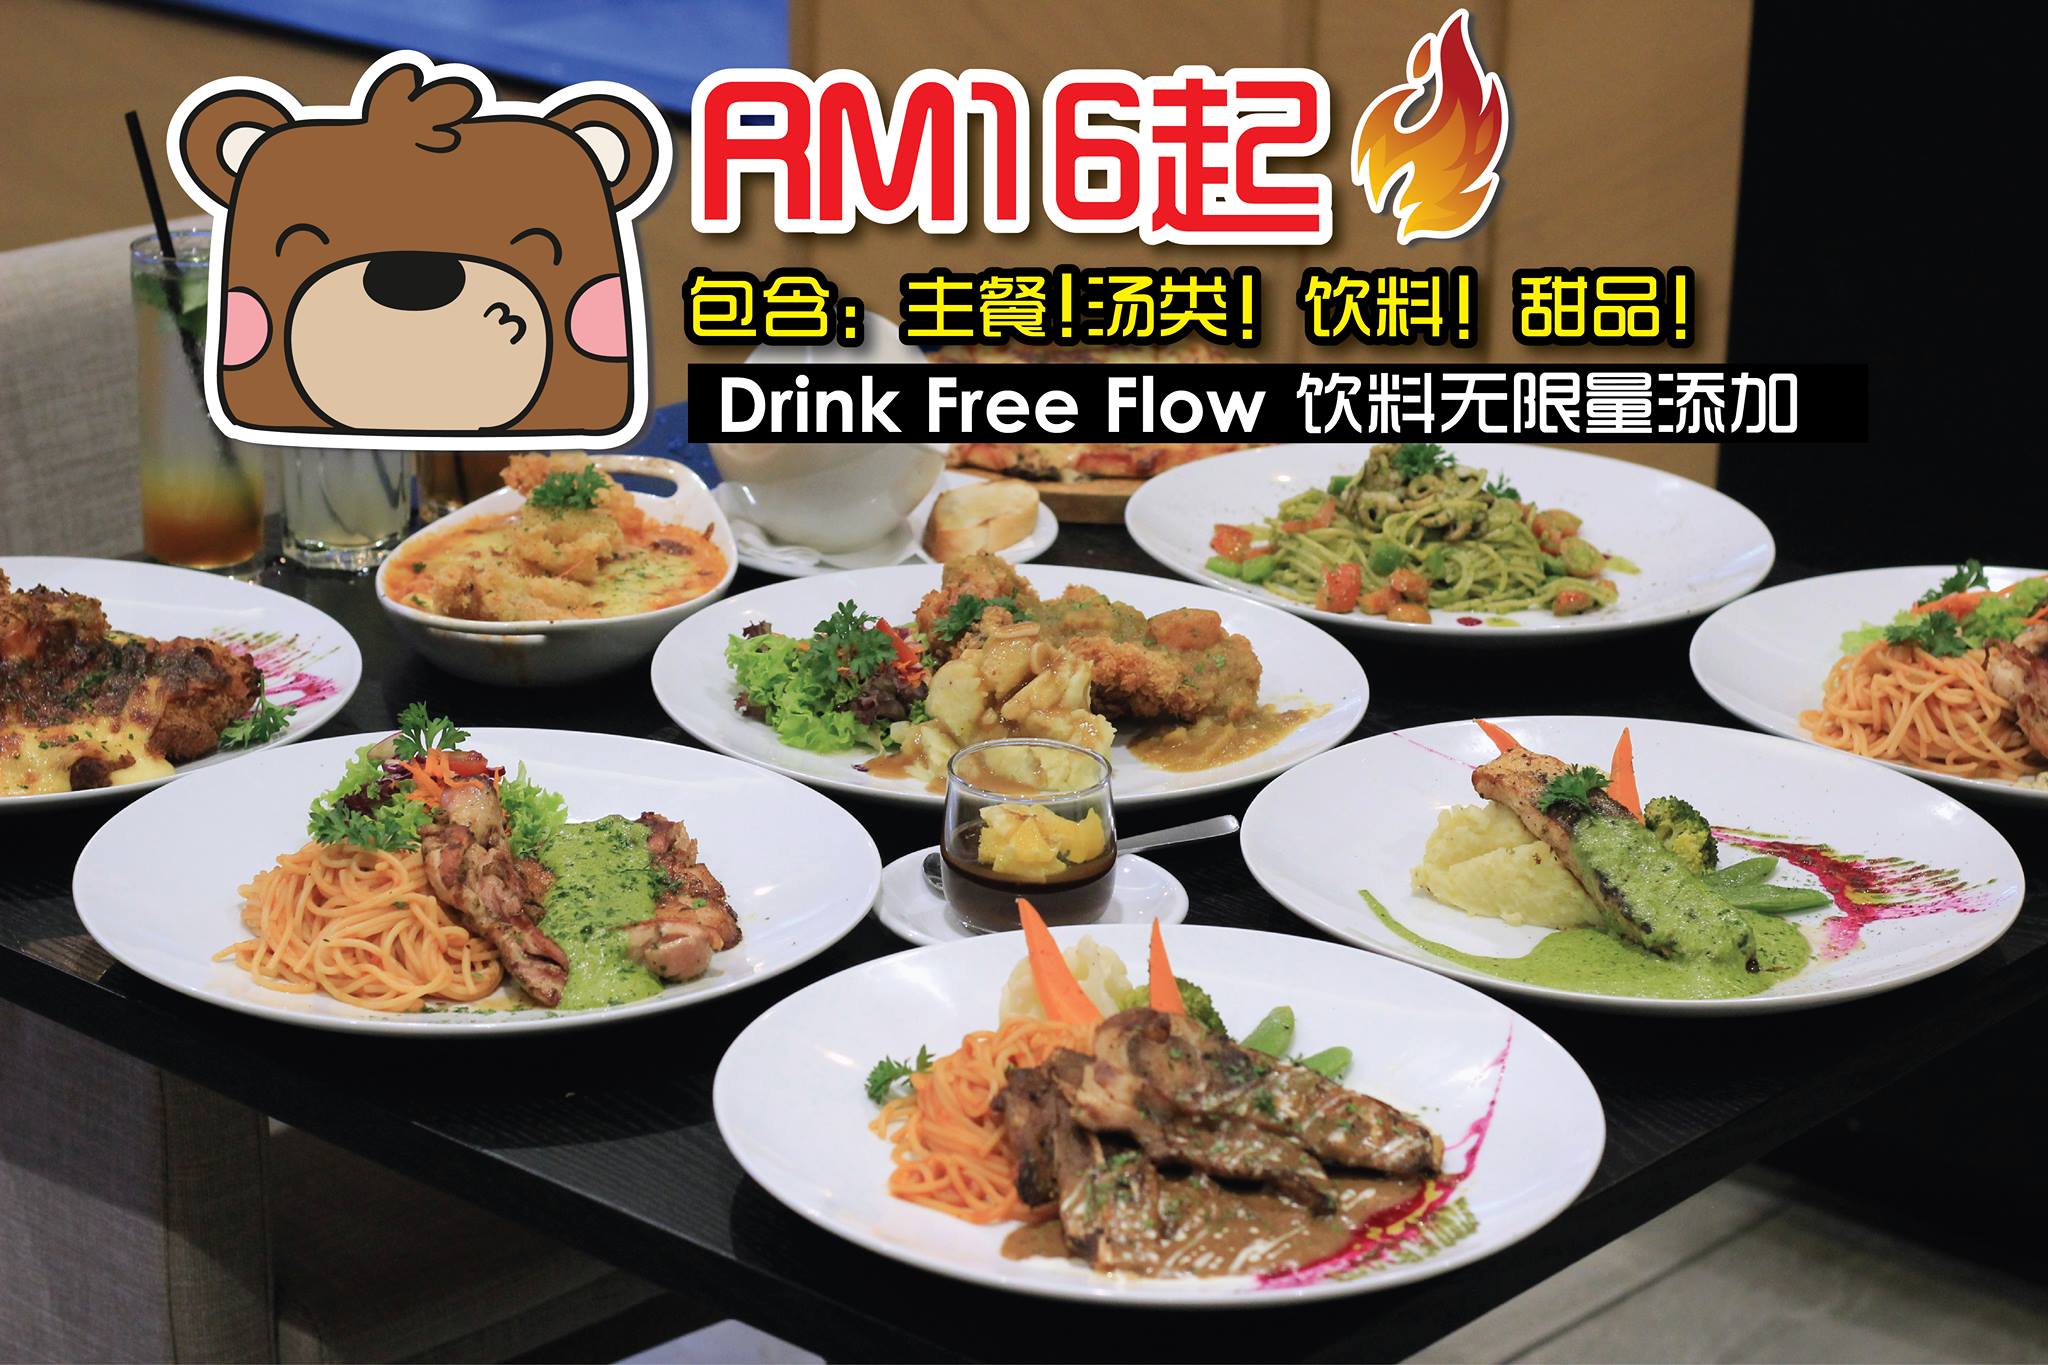 呐呐呐！#只要RM16就可以吃到 #4Course套餐 啦！饮料还是 “ #FreeRefills ” 哦！！